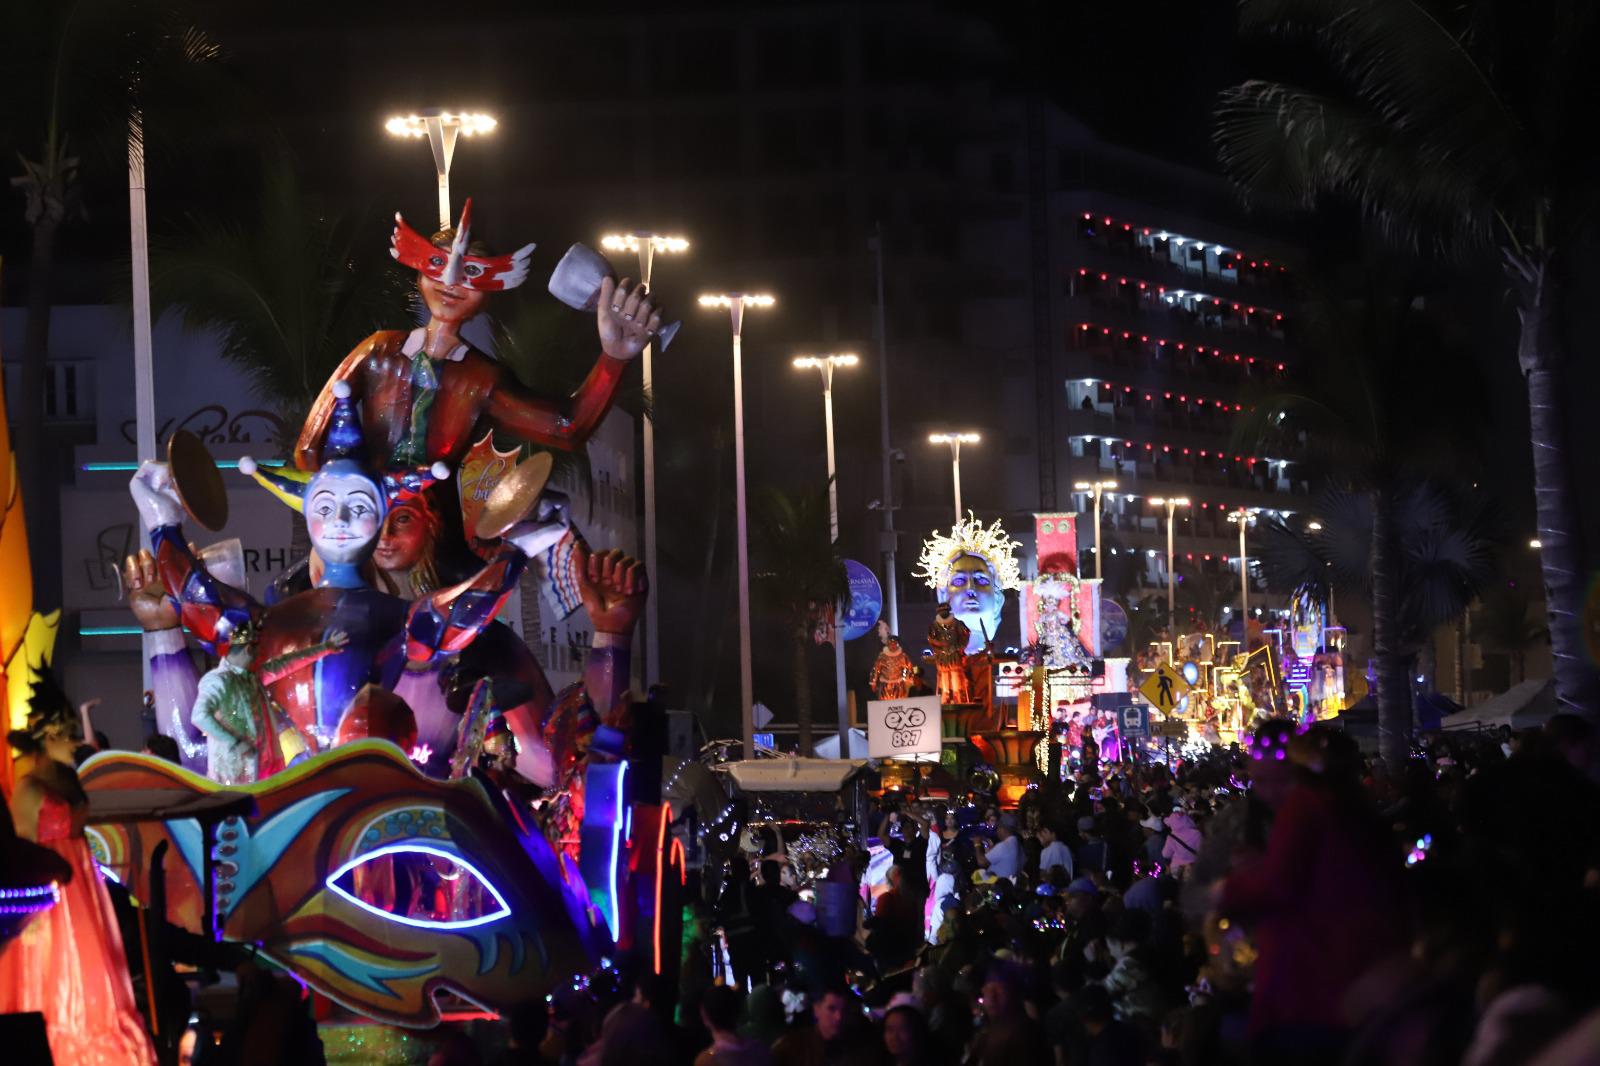 $!Asisten más de 600 mil personas a disfrutar del primer desfile del Carnaval en el malecón, reporta PC